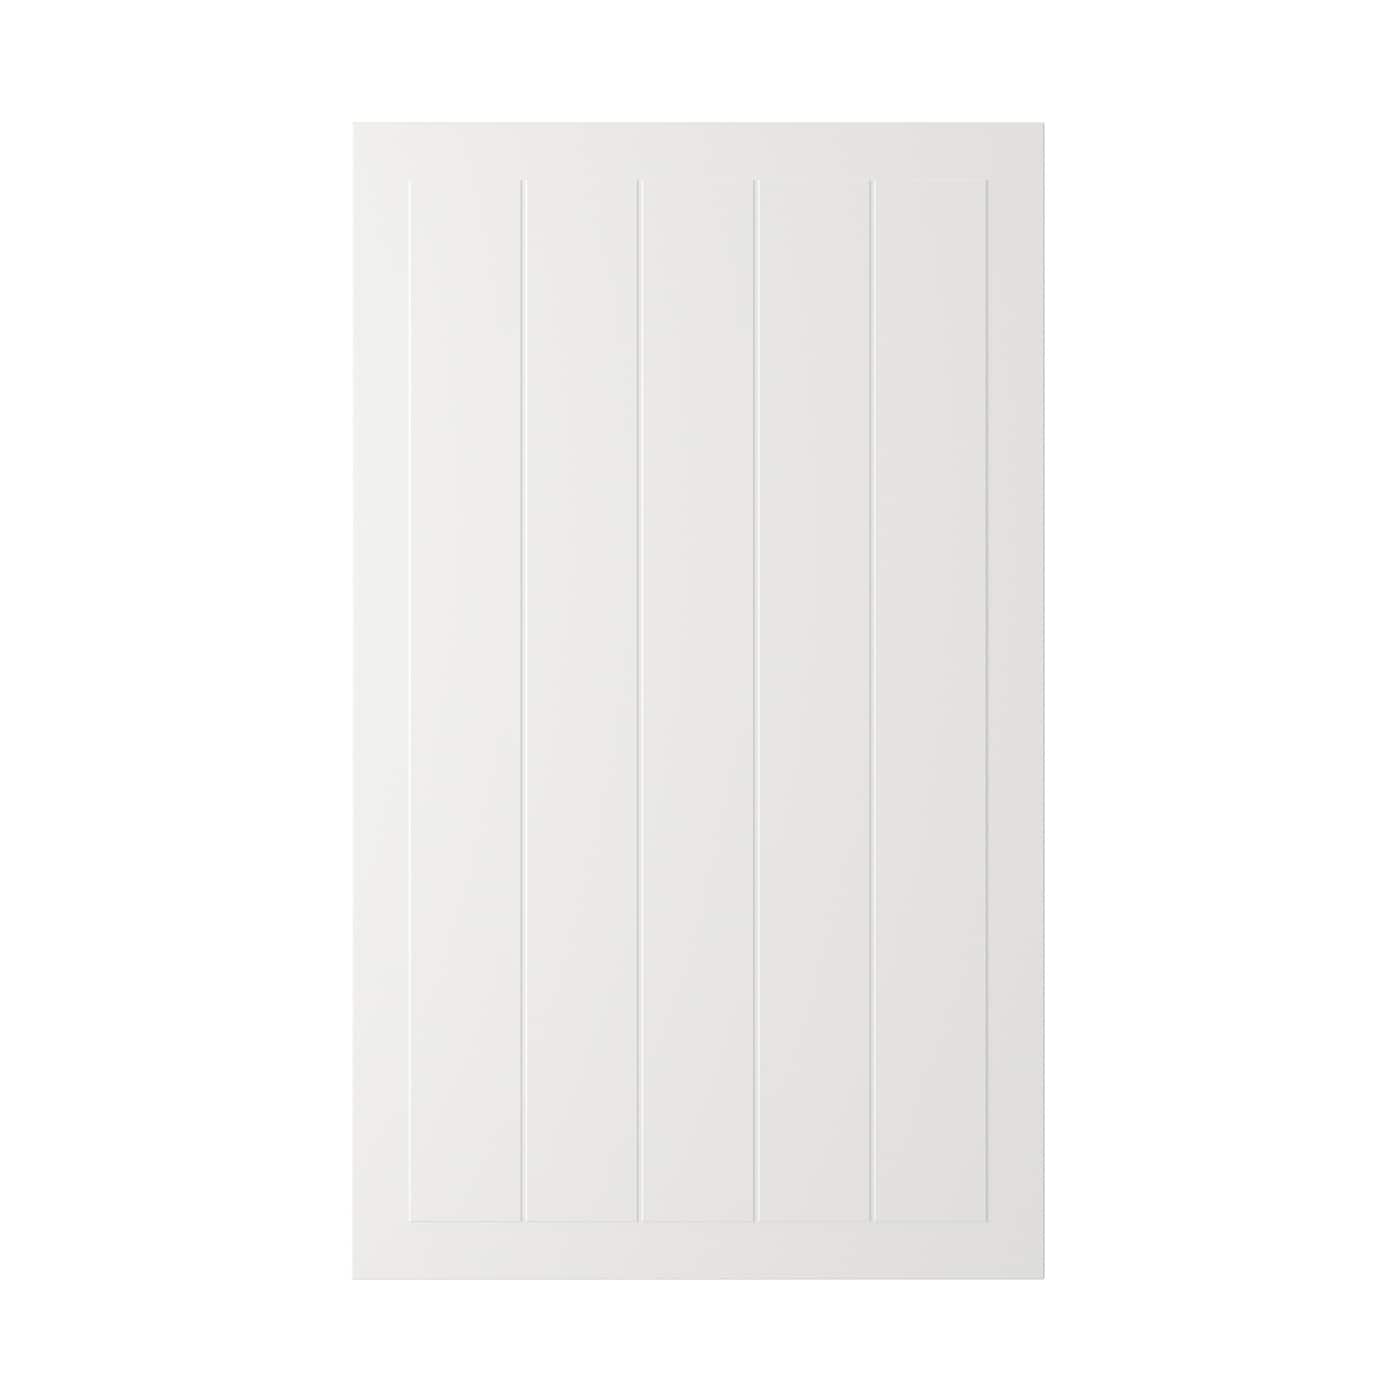 Дверца - IKEA STENSUND, 100х60 см, белый, СТЕНСУНД ИКЕА